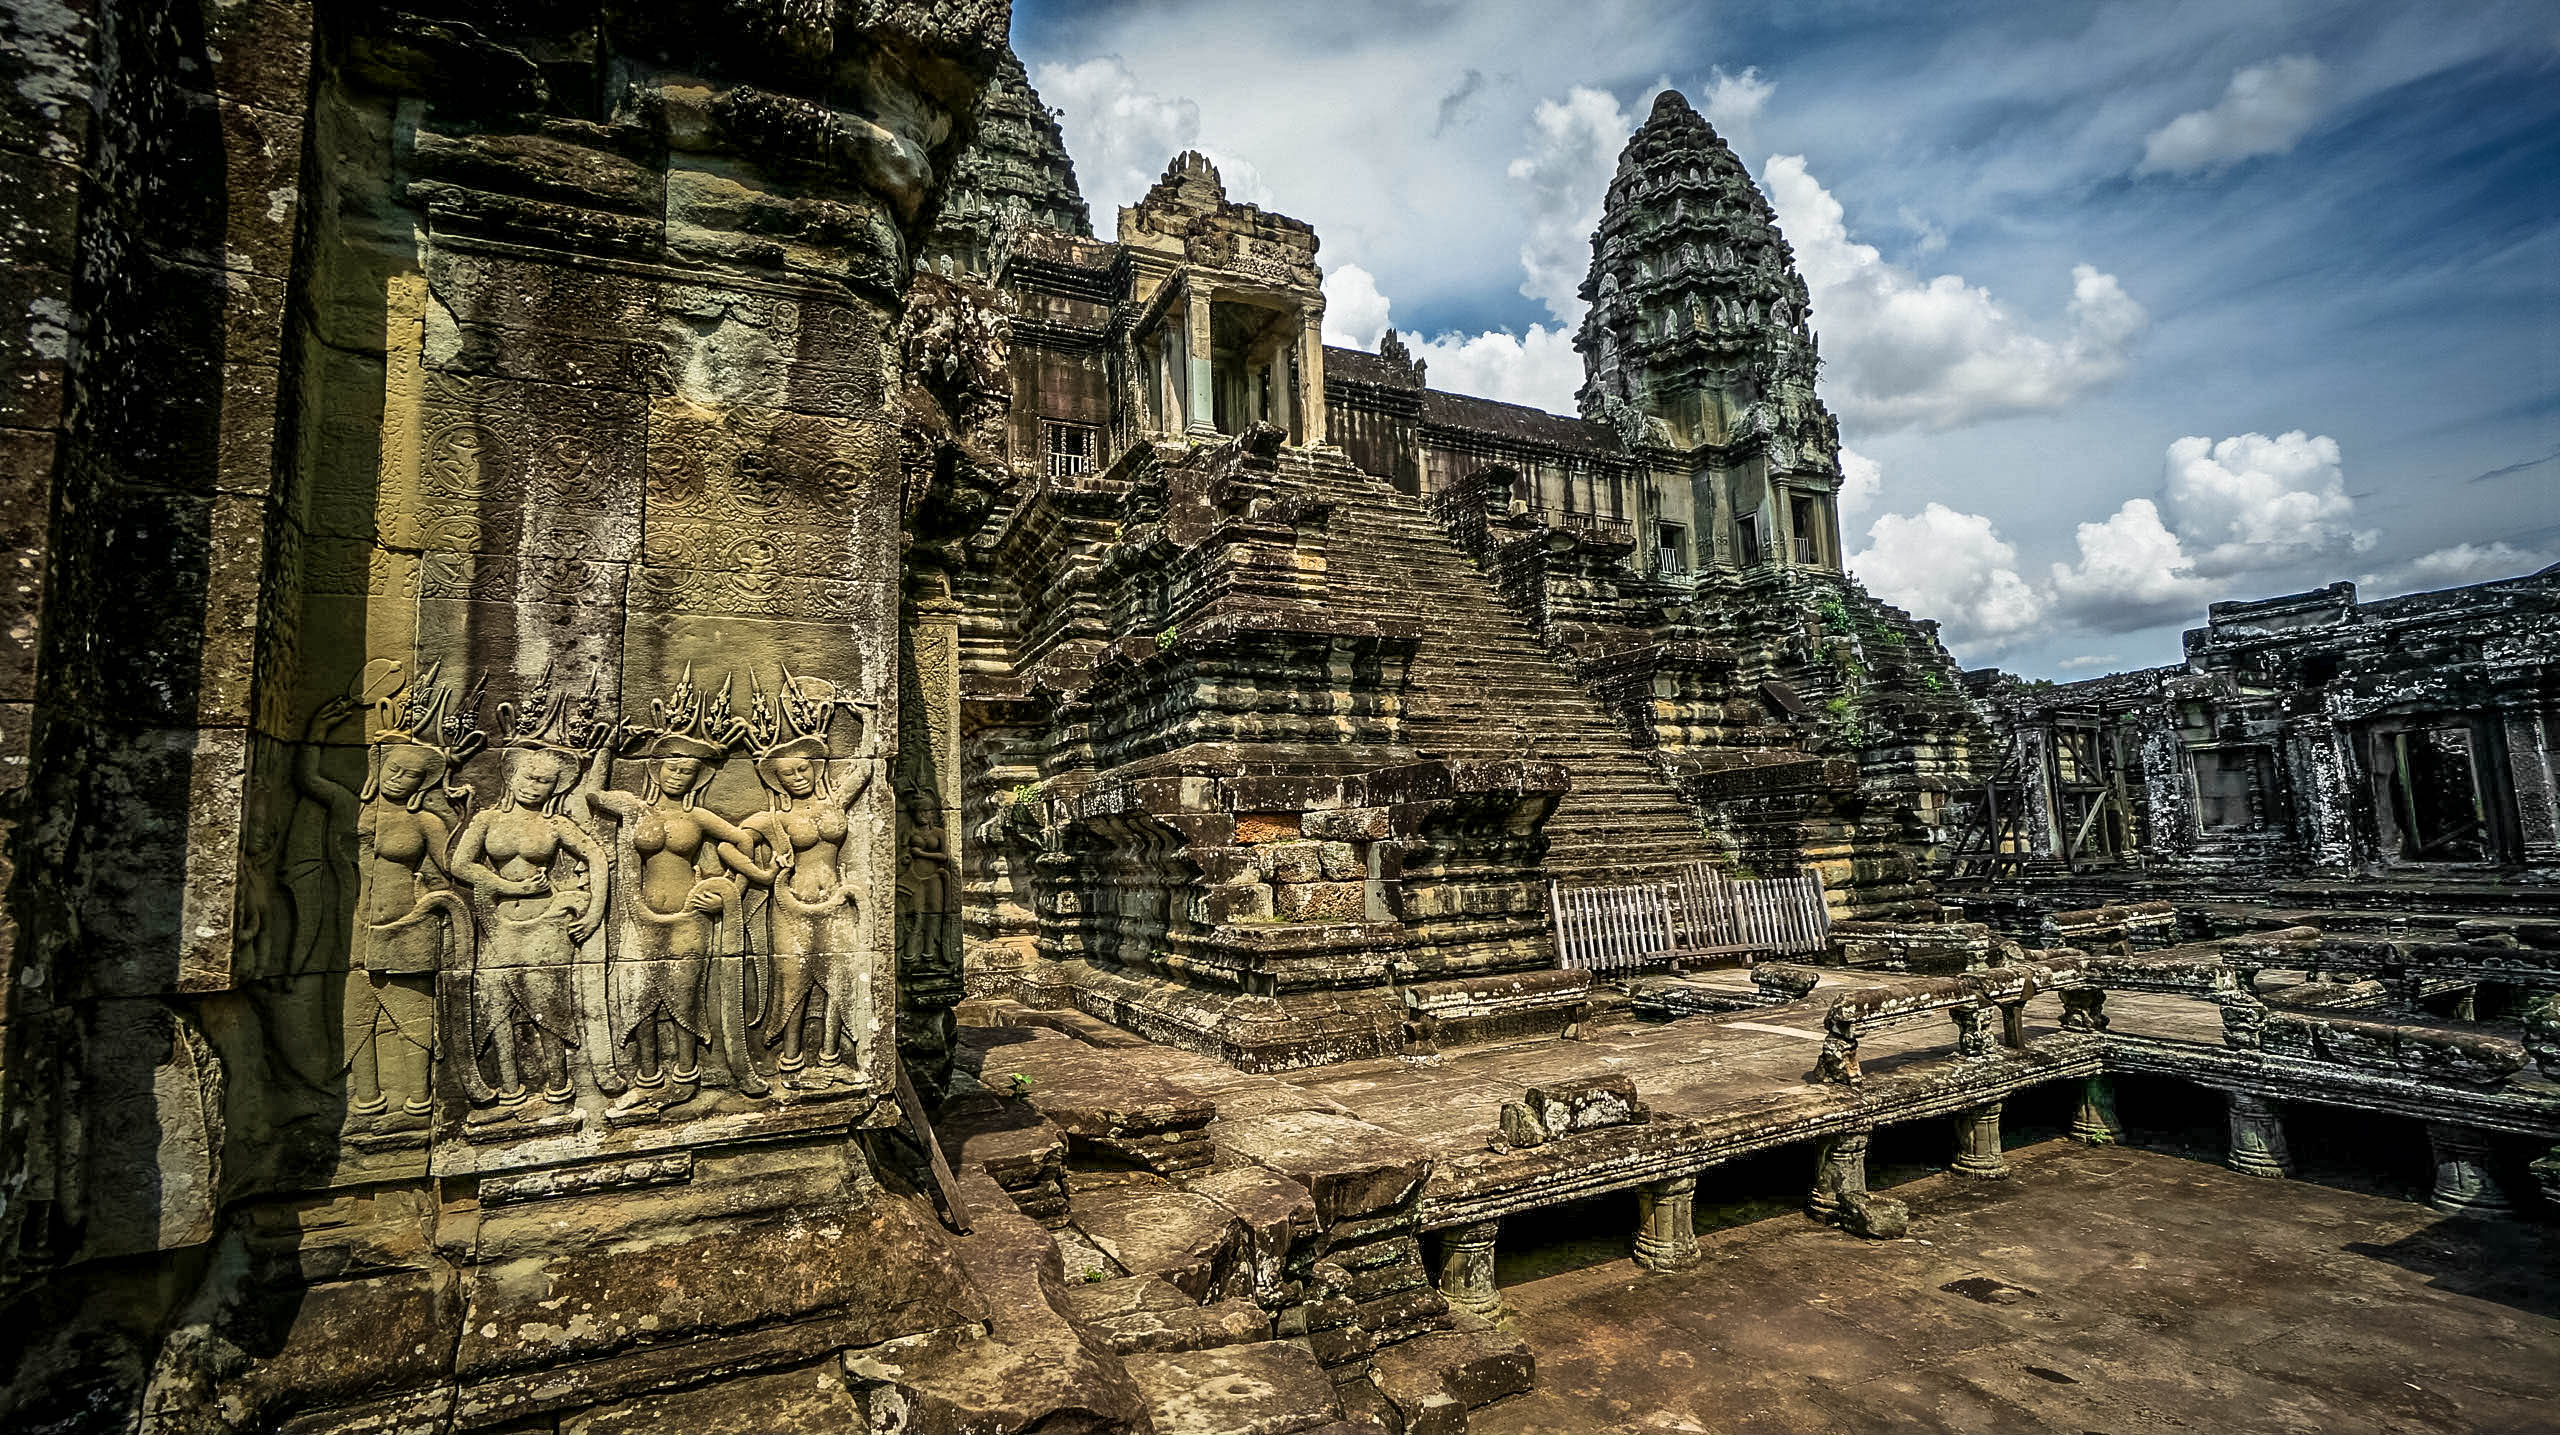 Artwork at Angkor Wat